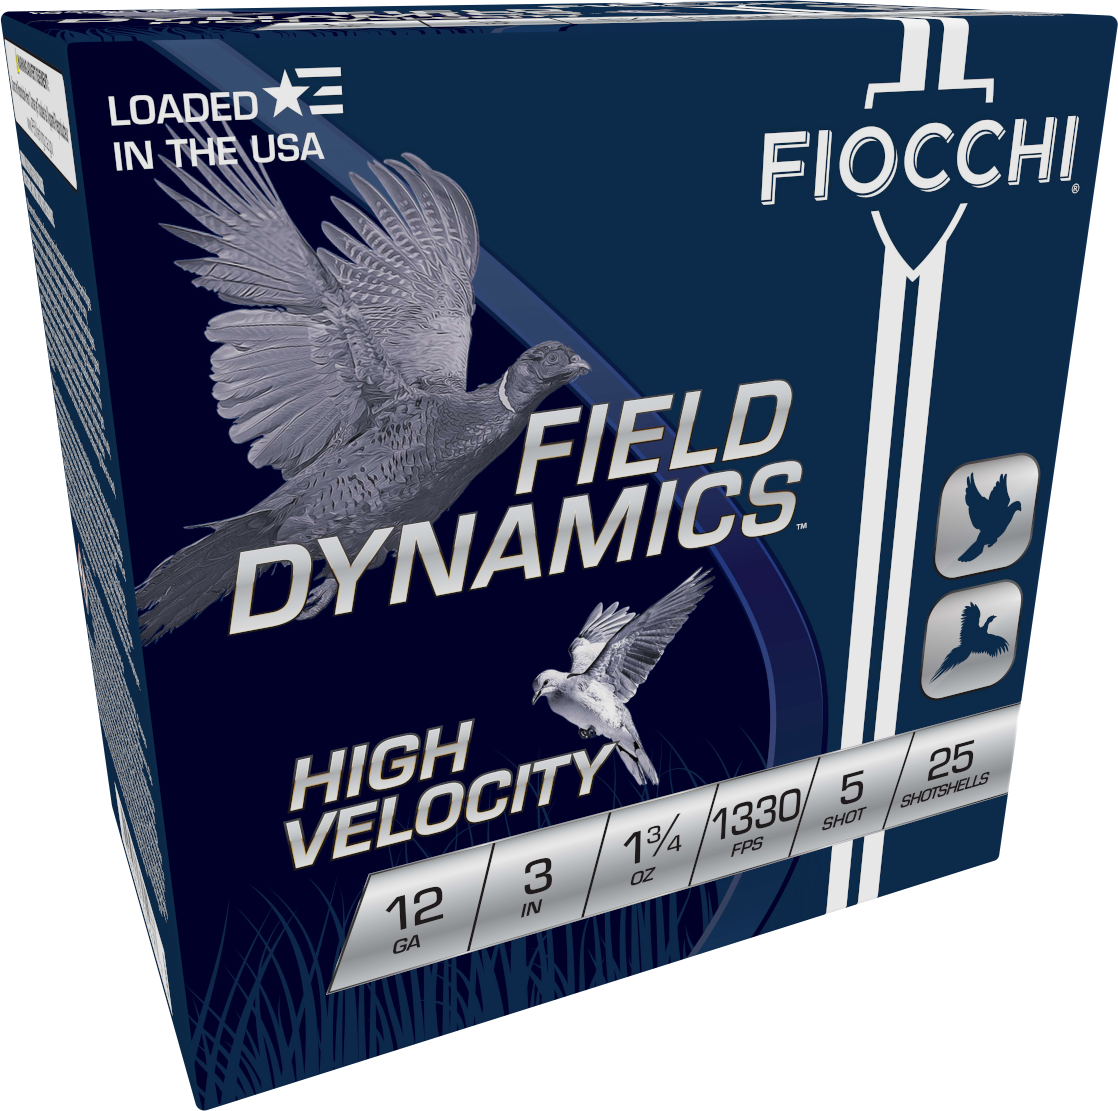 Fiocchi High Velocity 12ga. 3" 1 3/4 oz. #5 (1330 fps) PER BOX